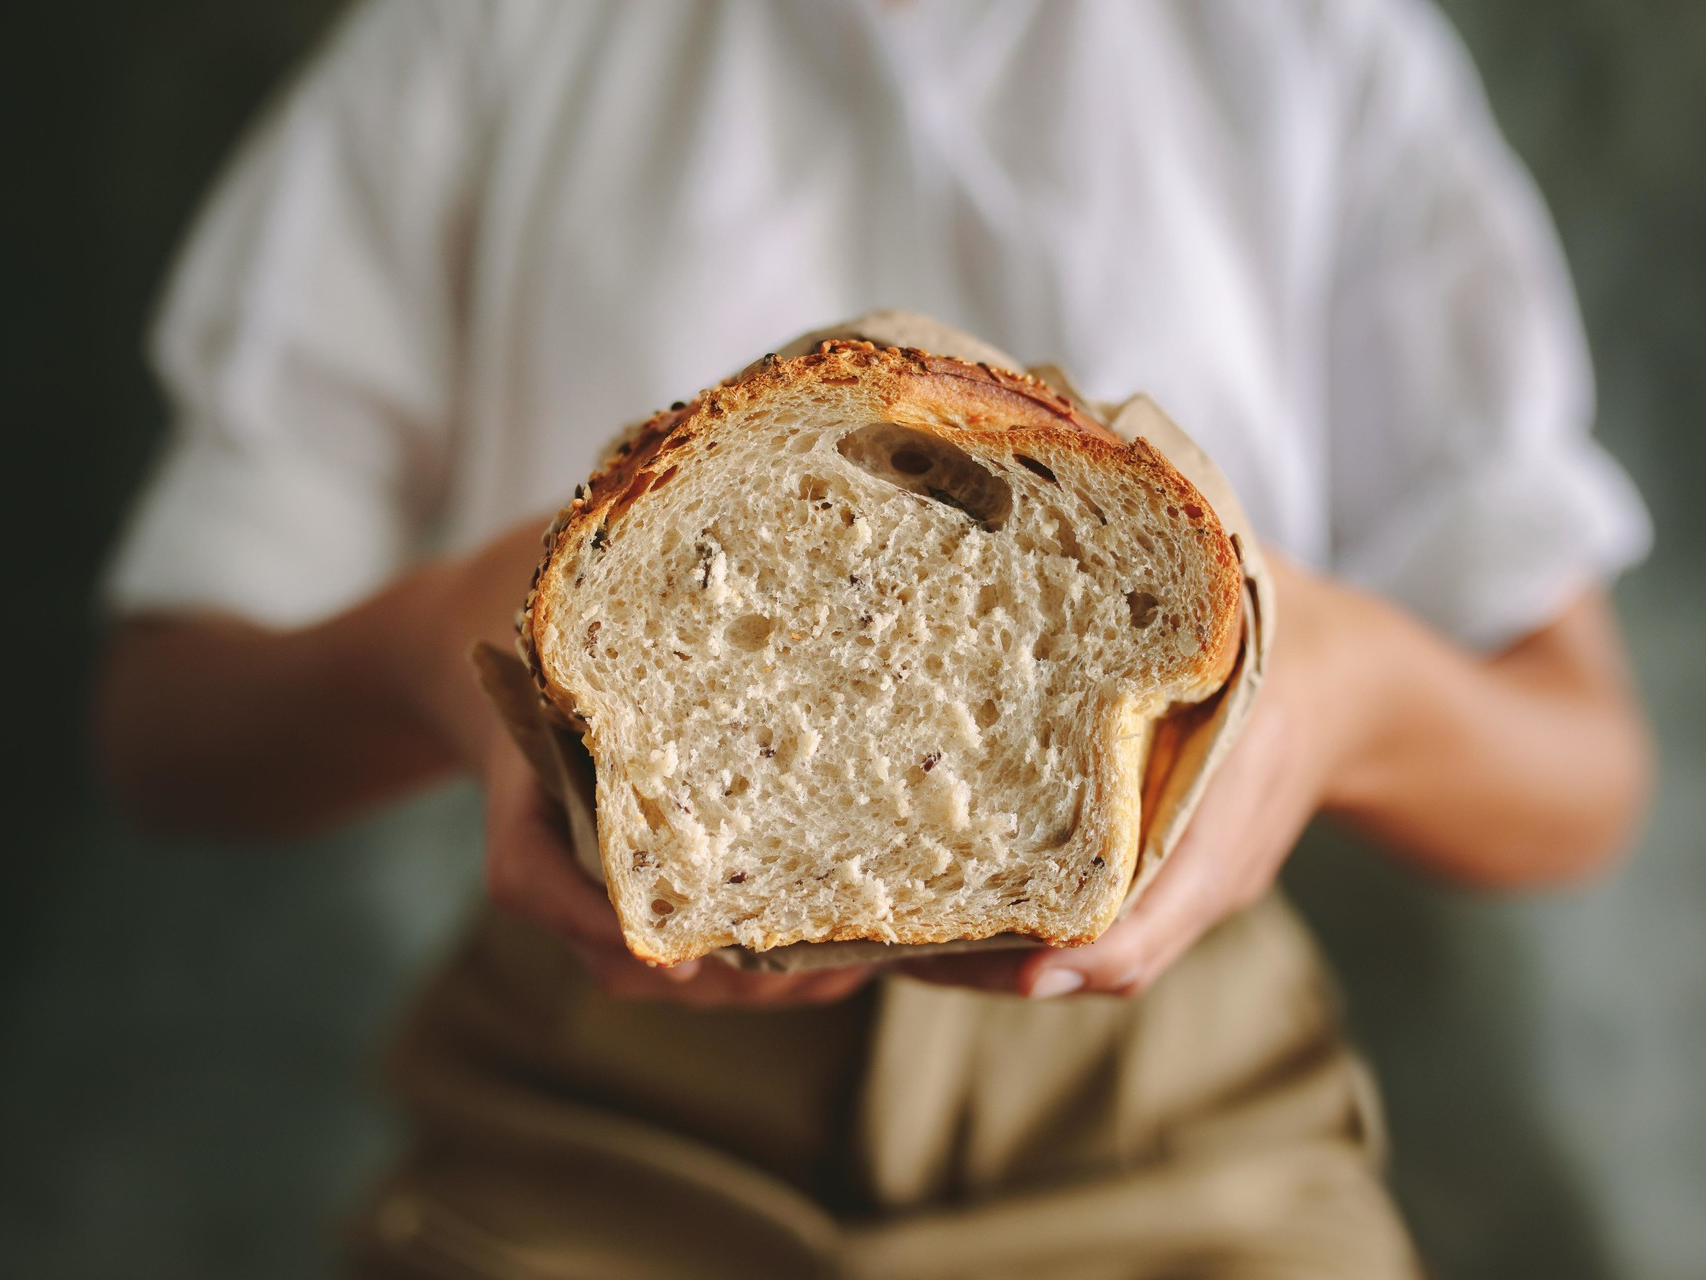 Черствый хлеб. Хлеб в руках. Несвежий хлеб. Хлебопек. Четверо ножниц мягчайший хлеб поезжай